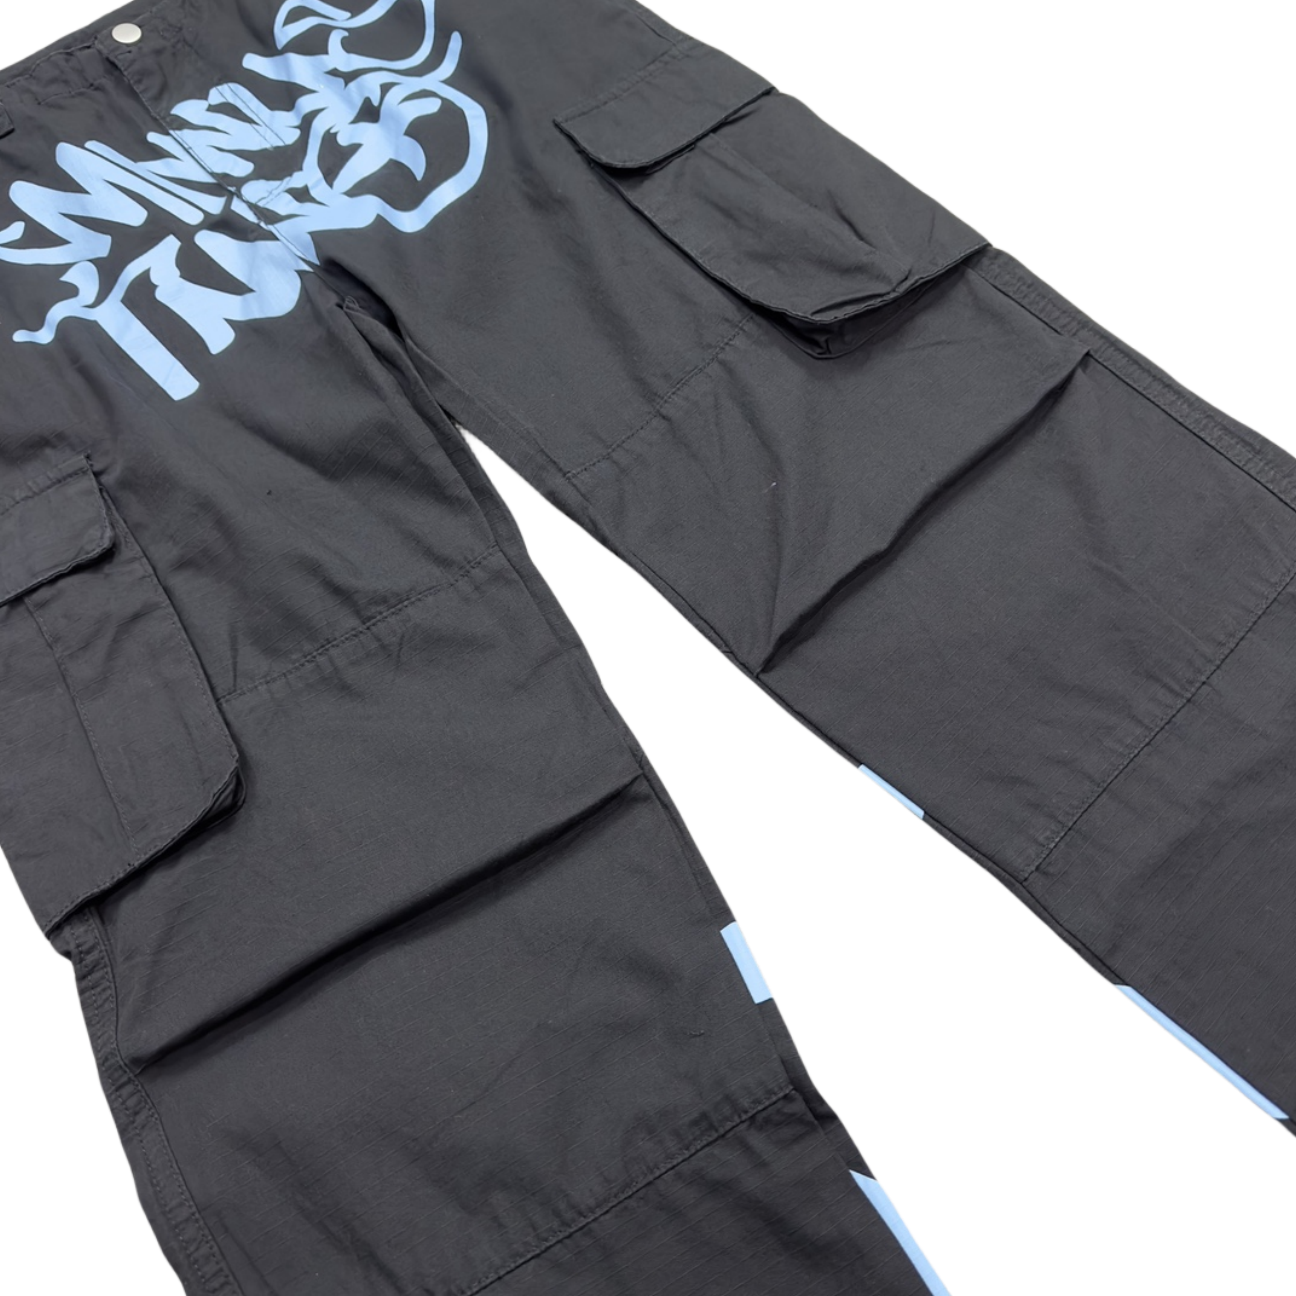 Minus Two Cargo Pants Y2K Streetwear Overalls Jeans Long Joggers Women's Men's Trousers - Black/Blue